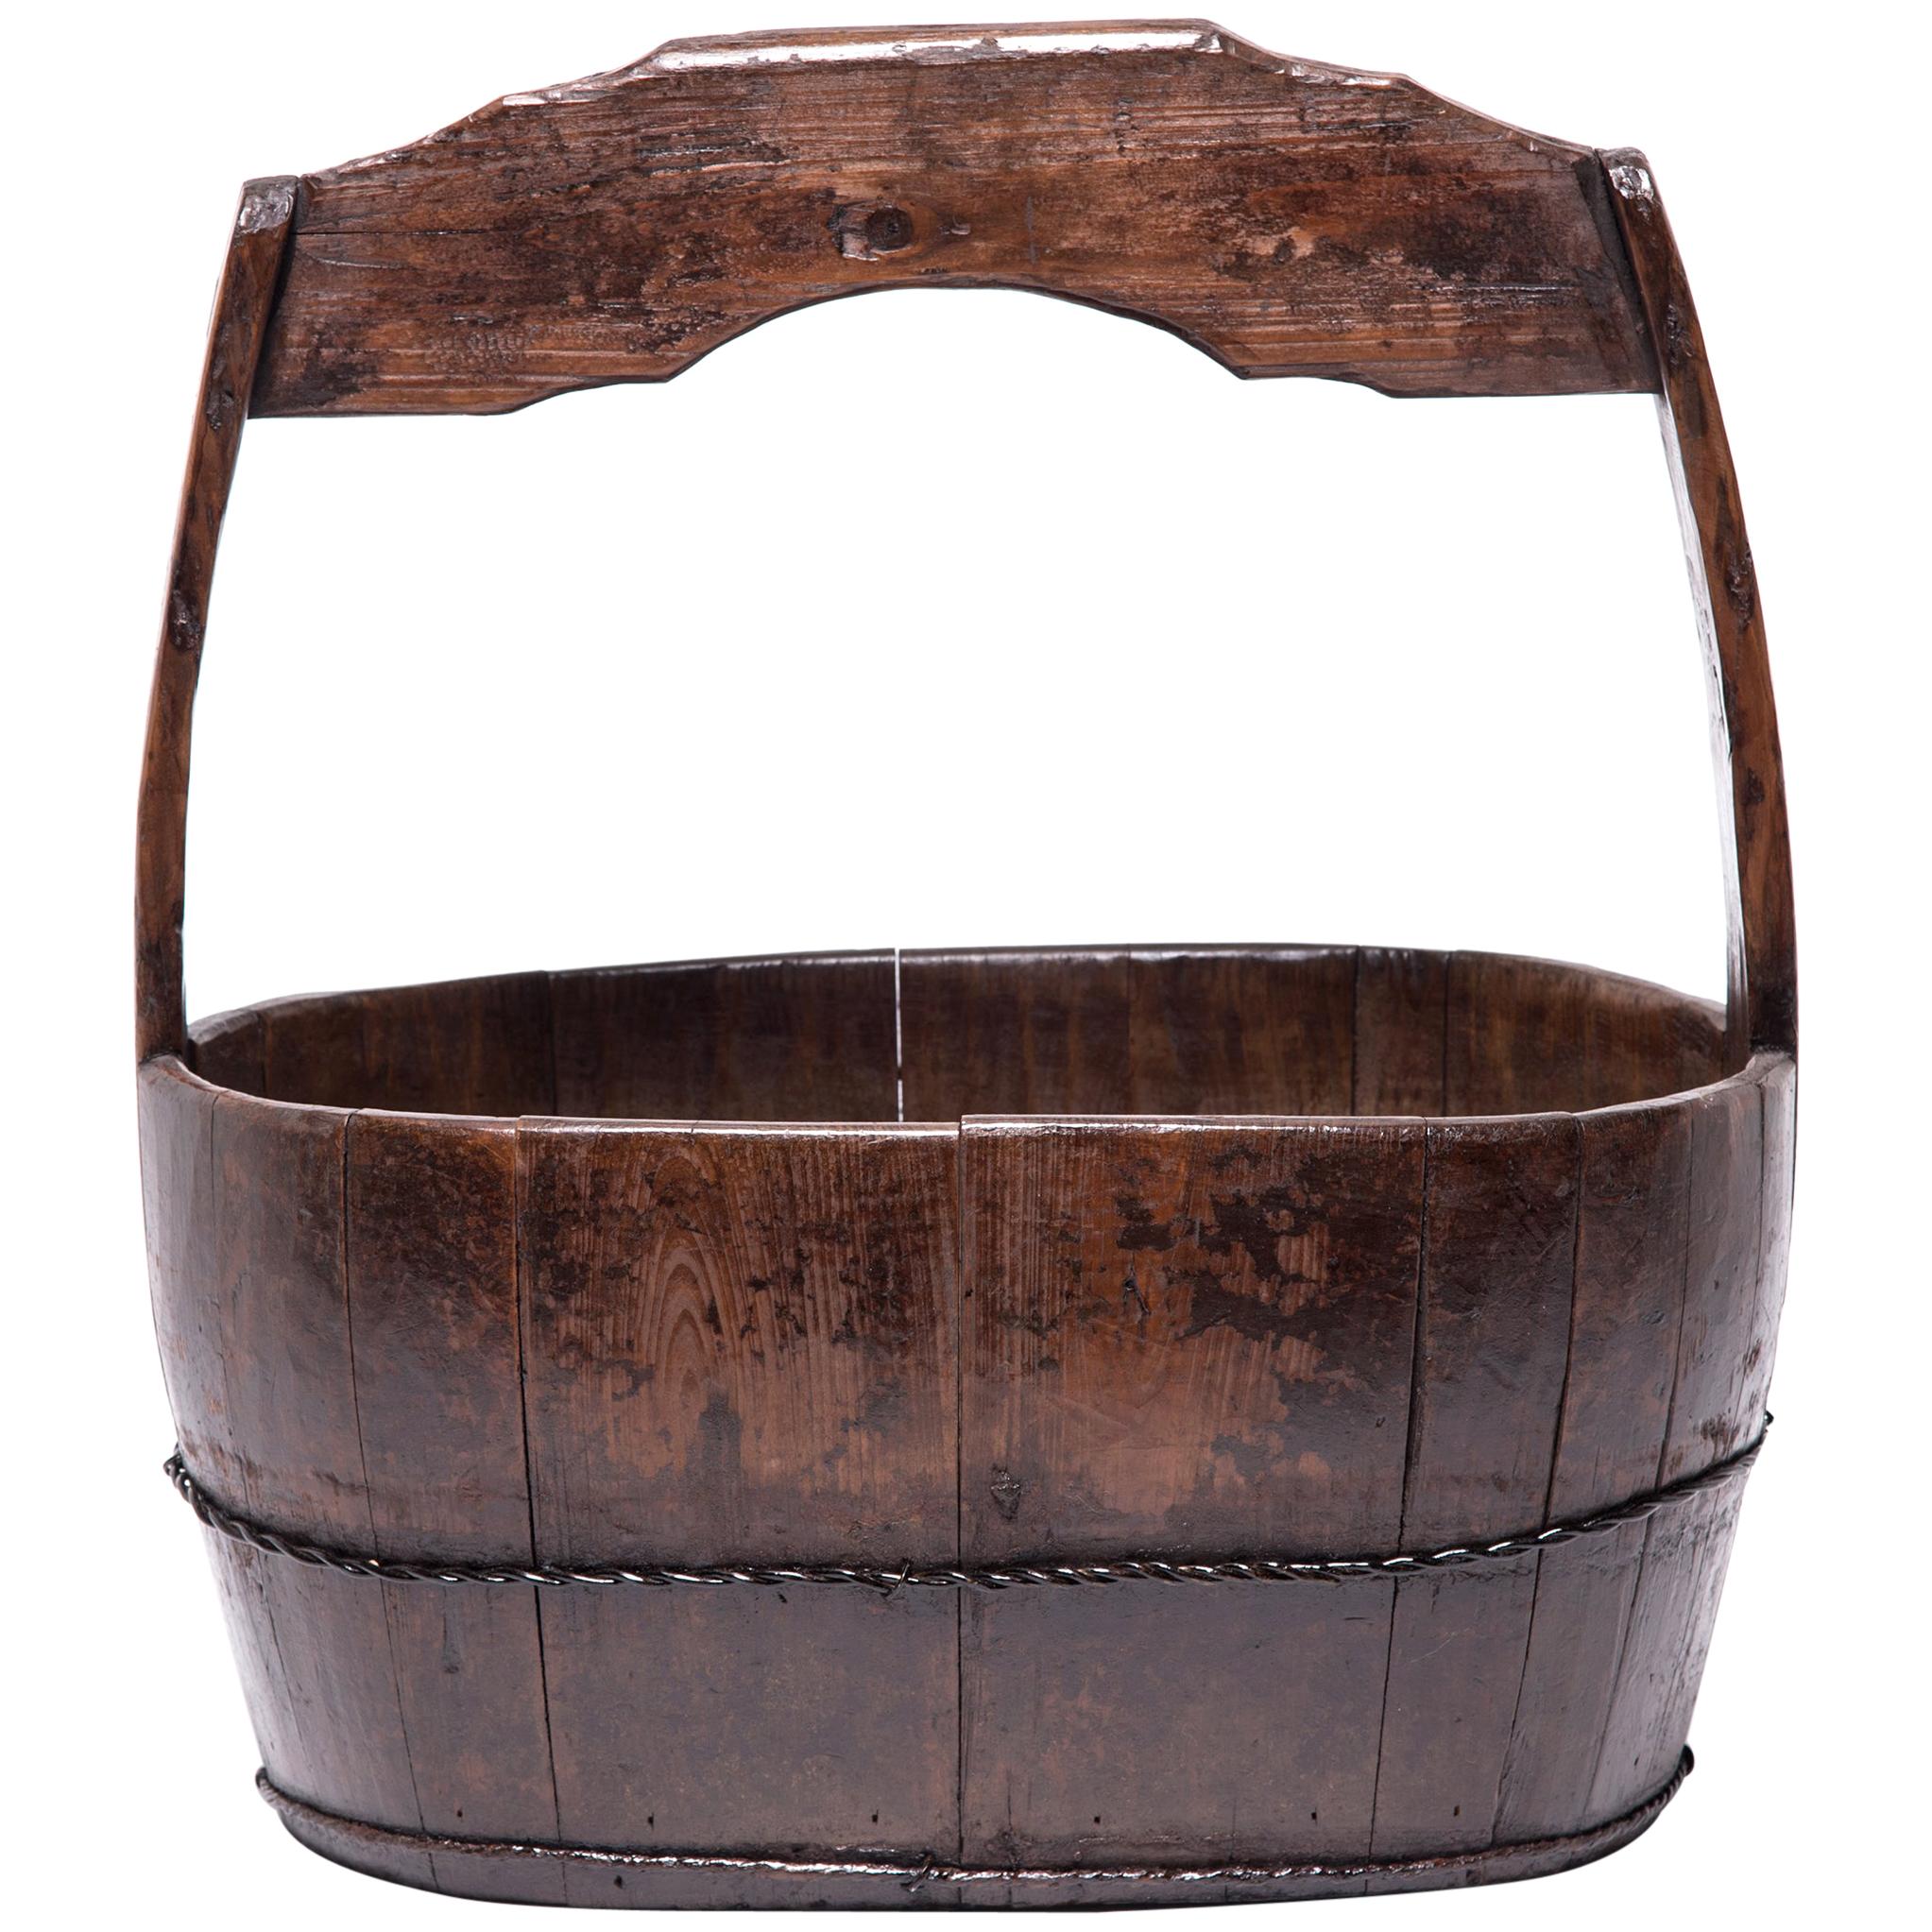 19th Century Chinese Burden Bucket